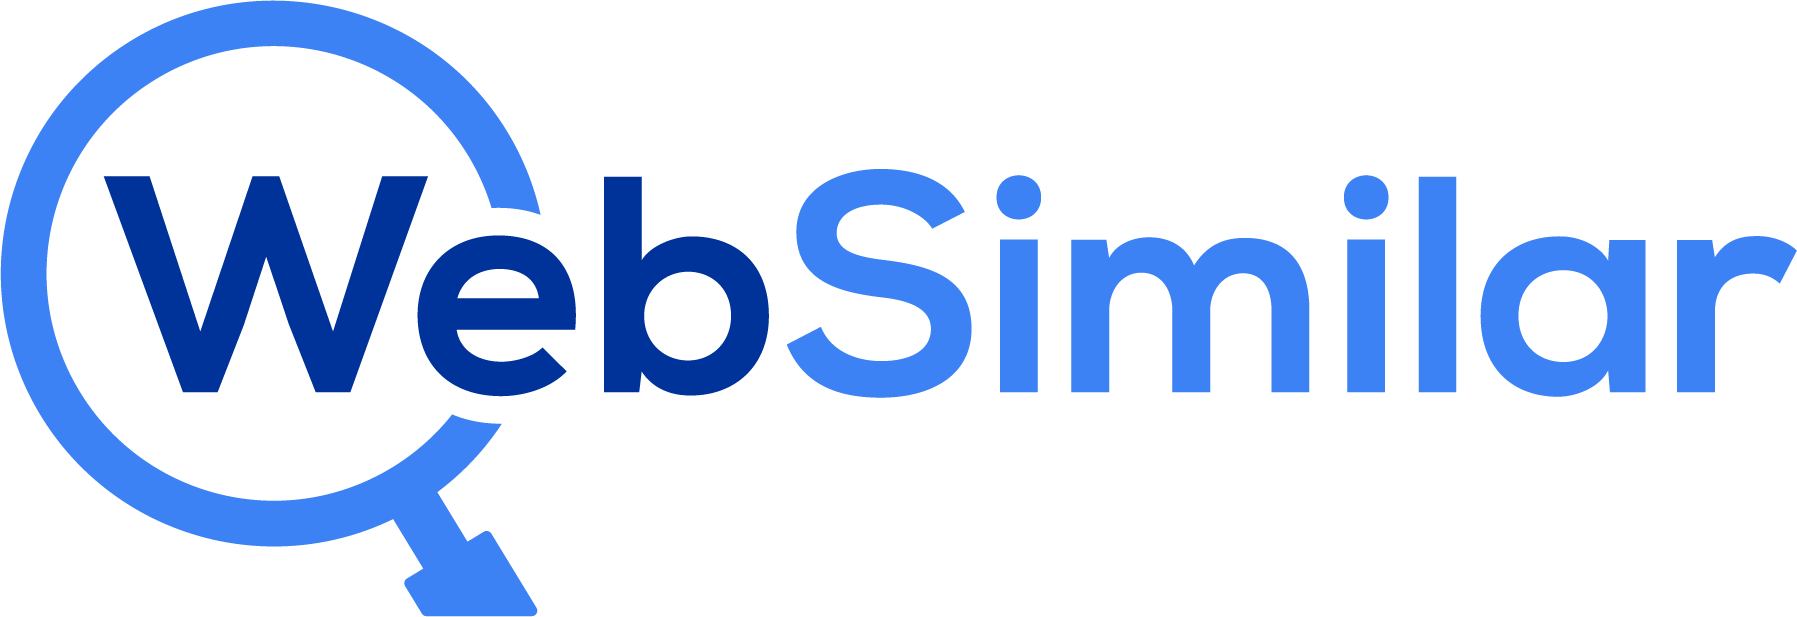 WebSimilar.org Logo